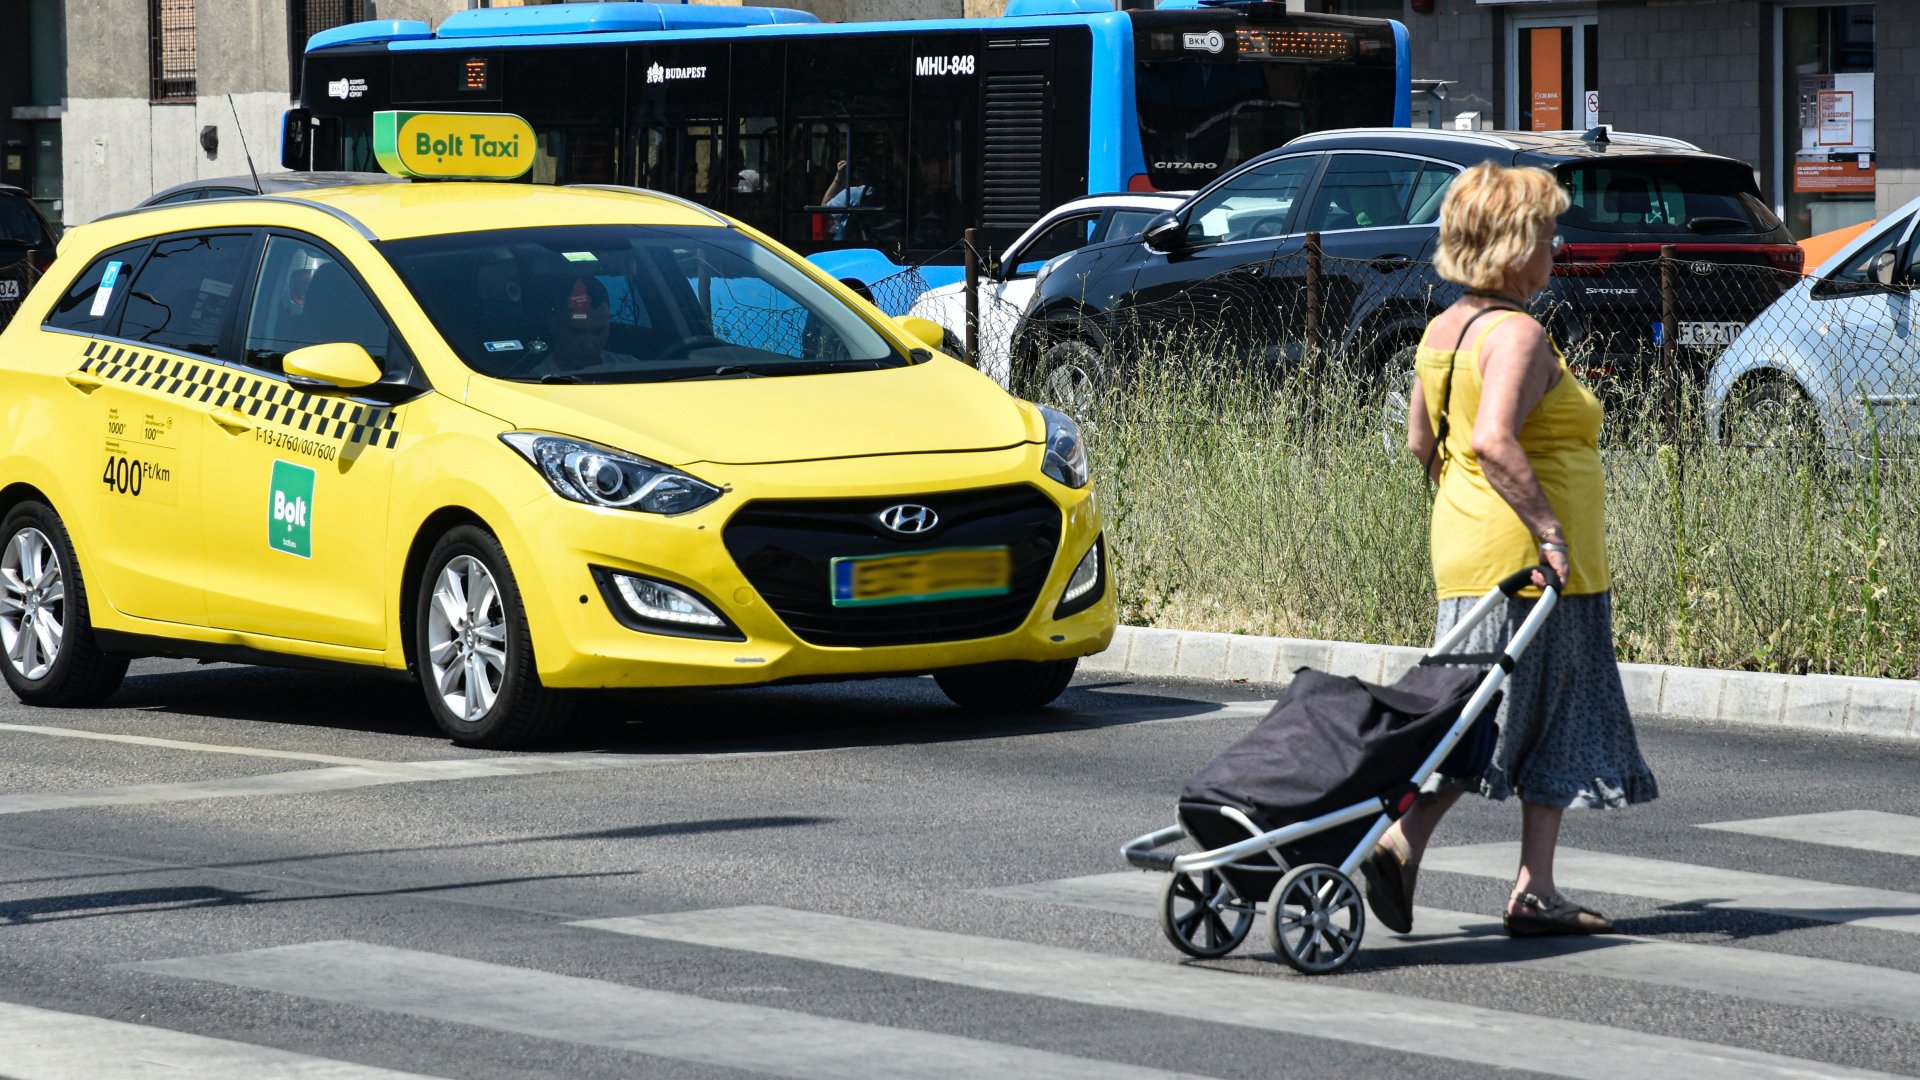 Nõ gurulós bevásárlótáskát maga után húzva megy át a gyalogátkelõhelyen, egy az áthaladását biztosító Bolt piacvezetõ európai utasszállító alkalmazás taxi gépkocsija elõtt a zuglói Bosnyák téren